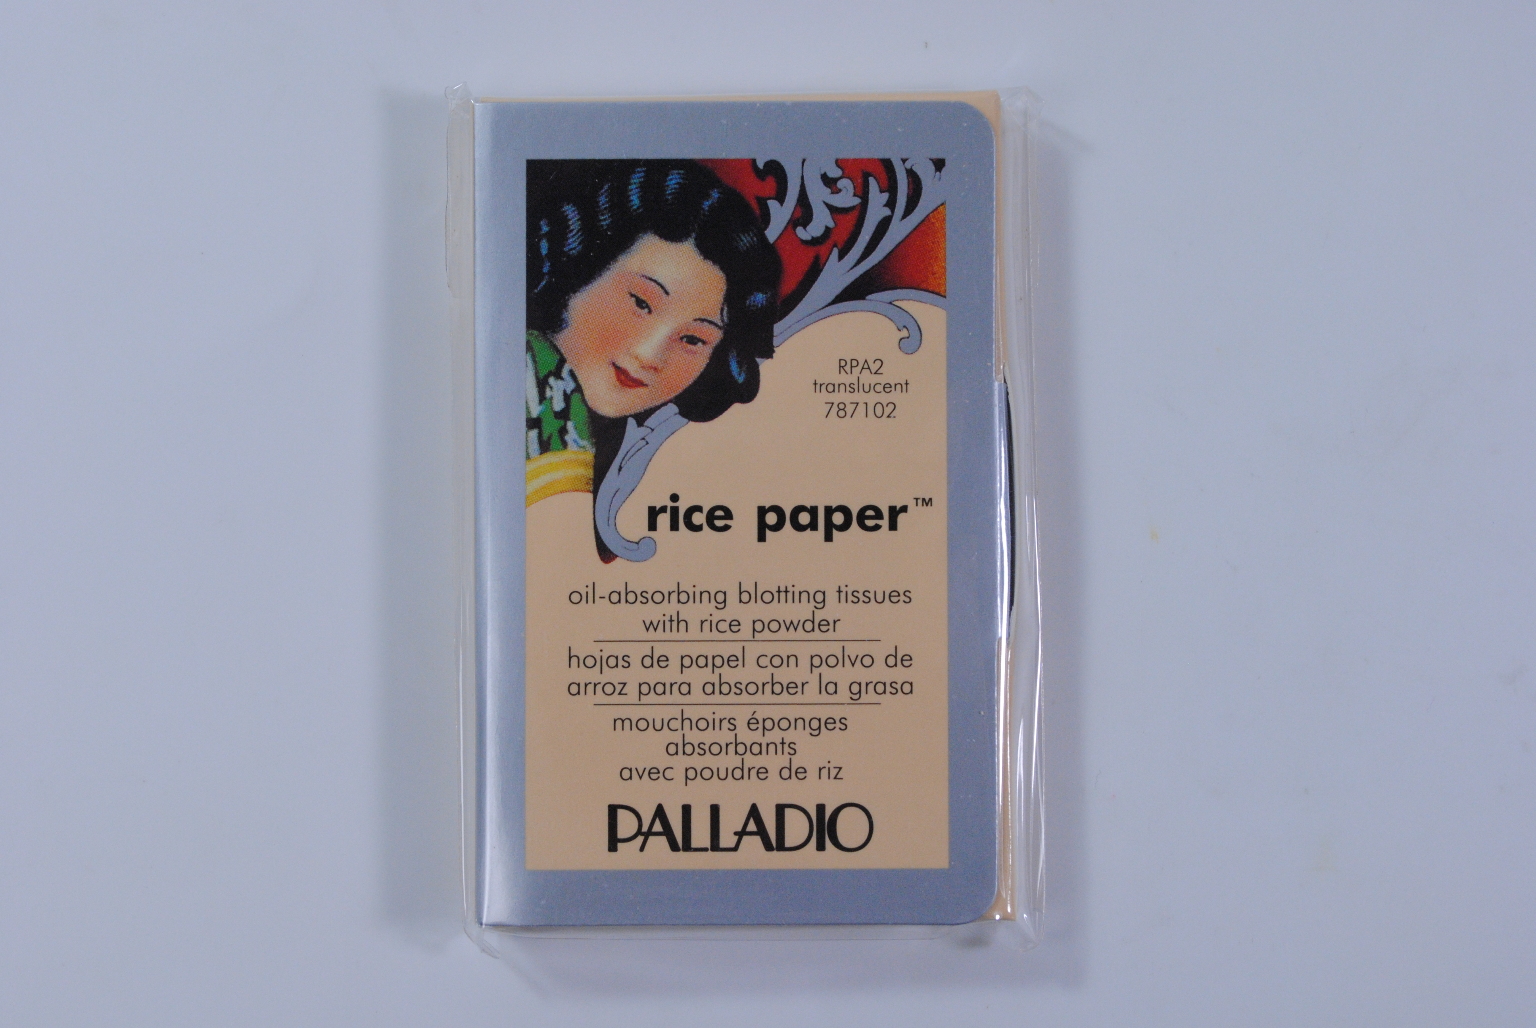 Wholesale Palladio Rice Paper Tissues - Translucent(6x.56)